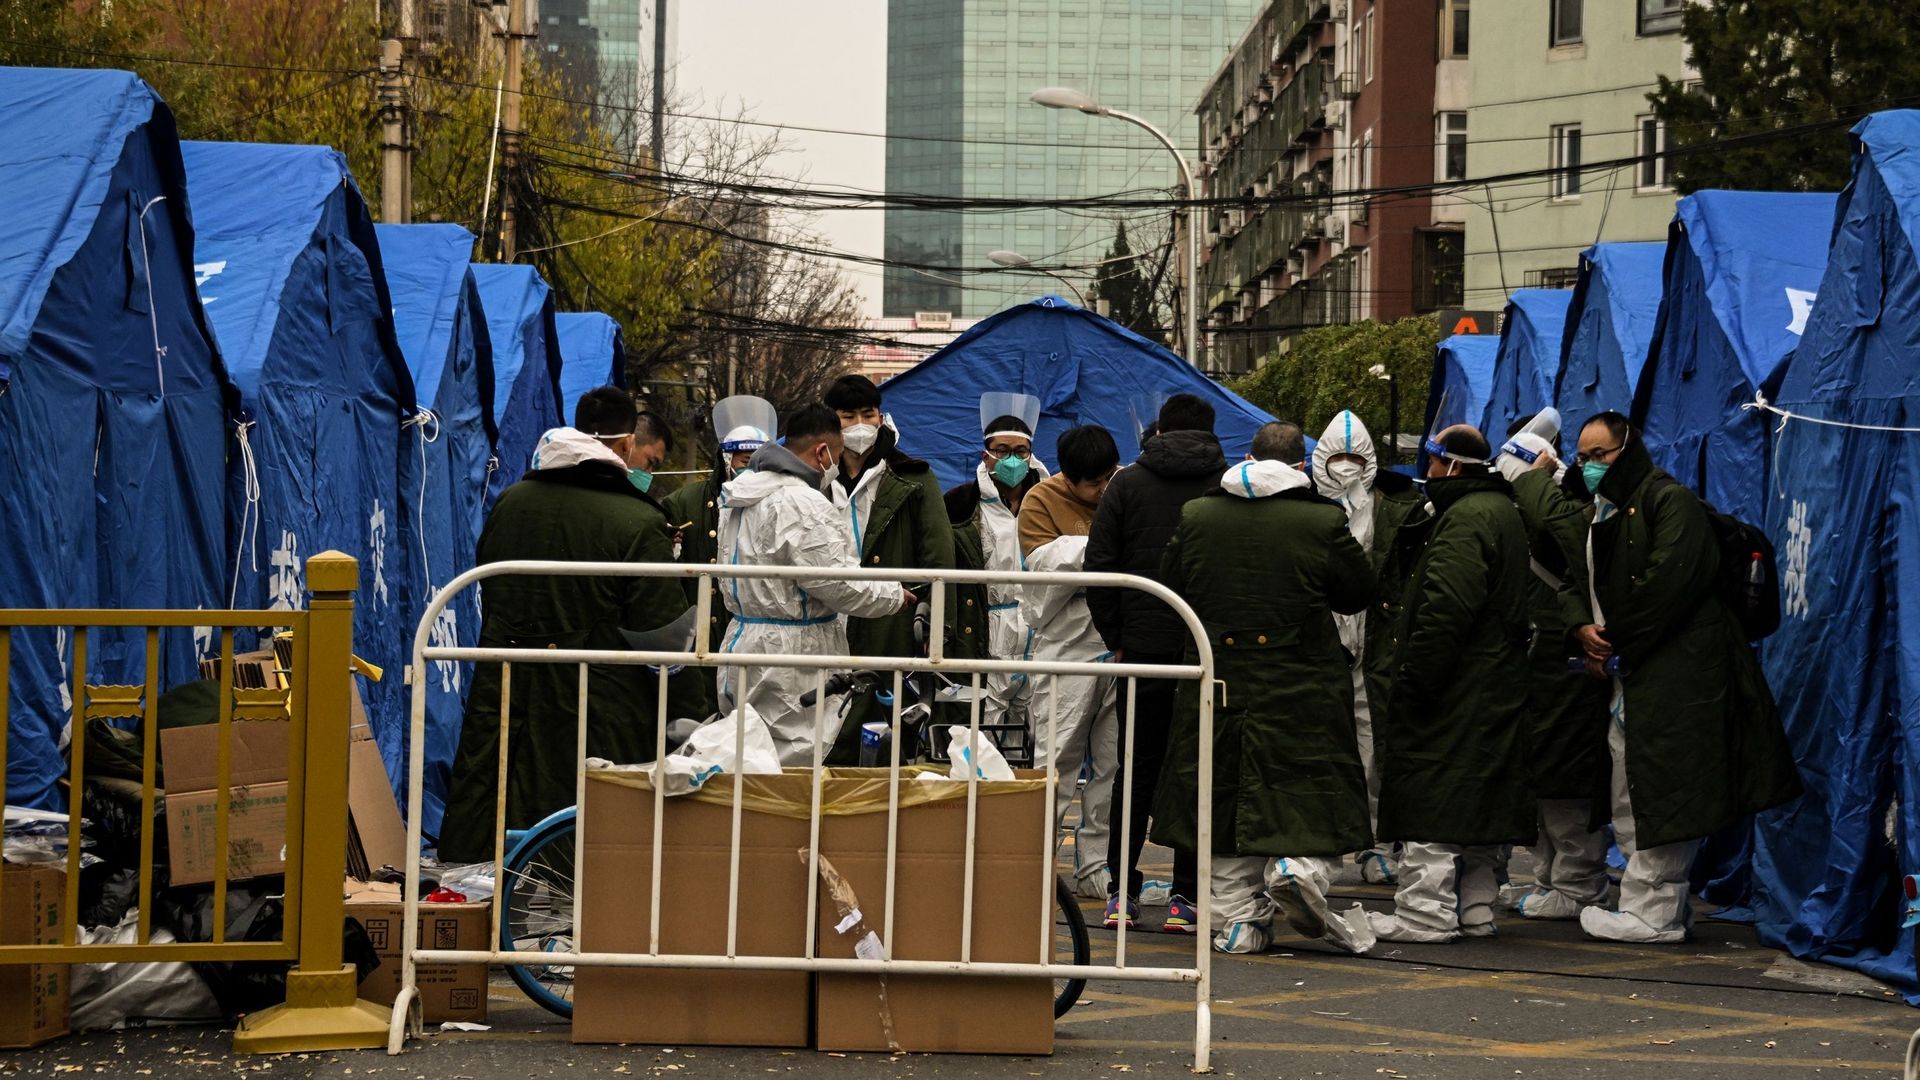 Du personnel de sécurité portant des équipements de protection individuelle près d’une zone résidentielle sous confinement en raison des restrictions liées au Covid-19, à Pékin, le 22 novembre 2022.